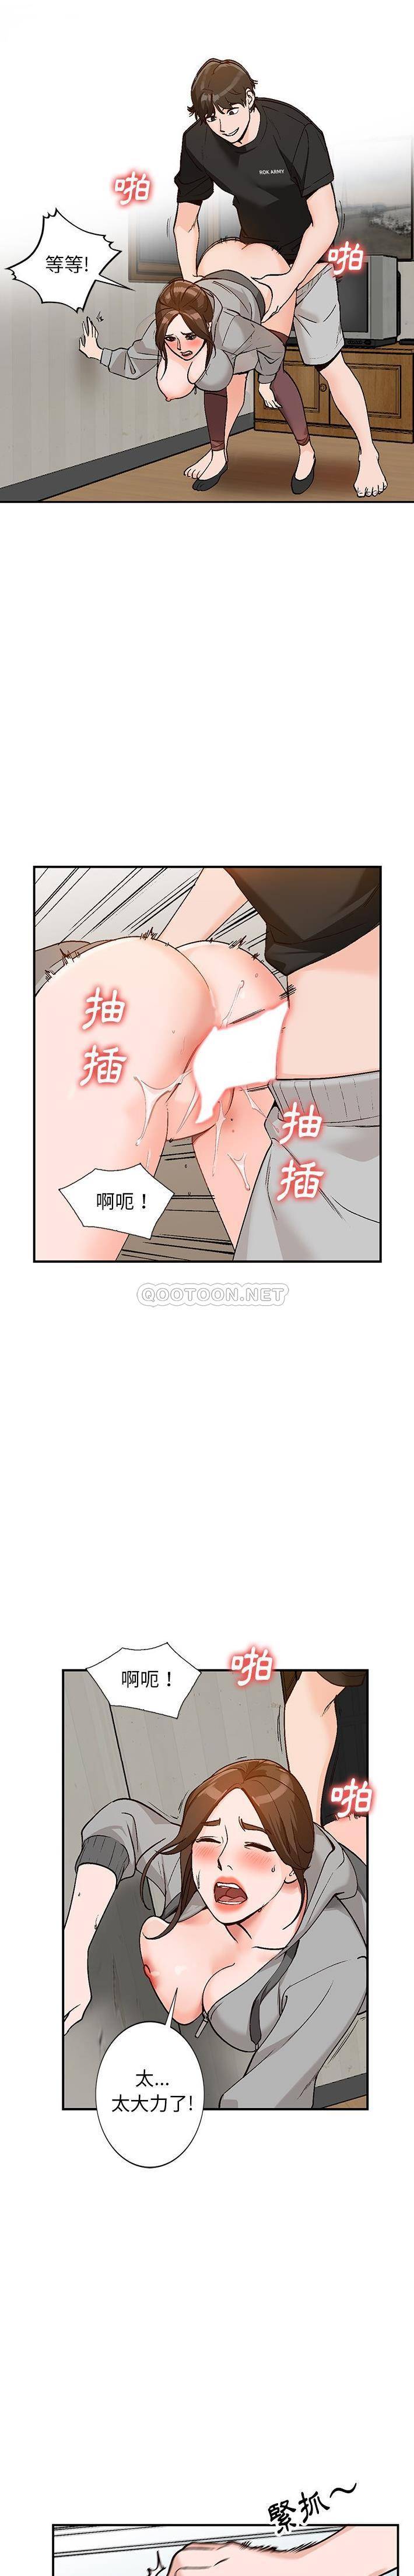 韩国污漫画 她們的小秘密(小鎮上的女人們) 第3话 20